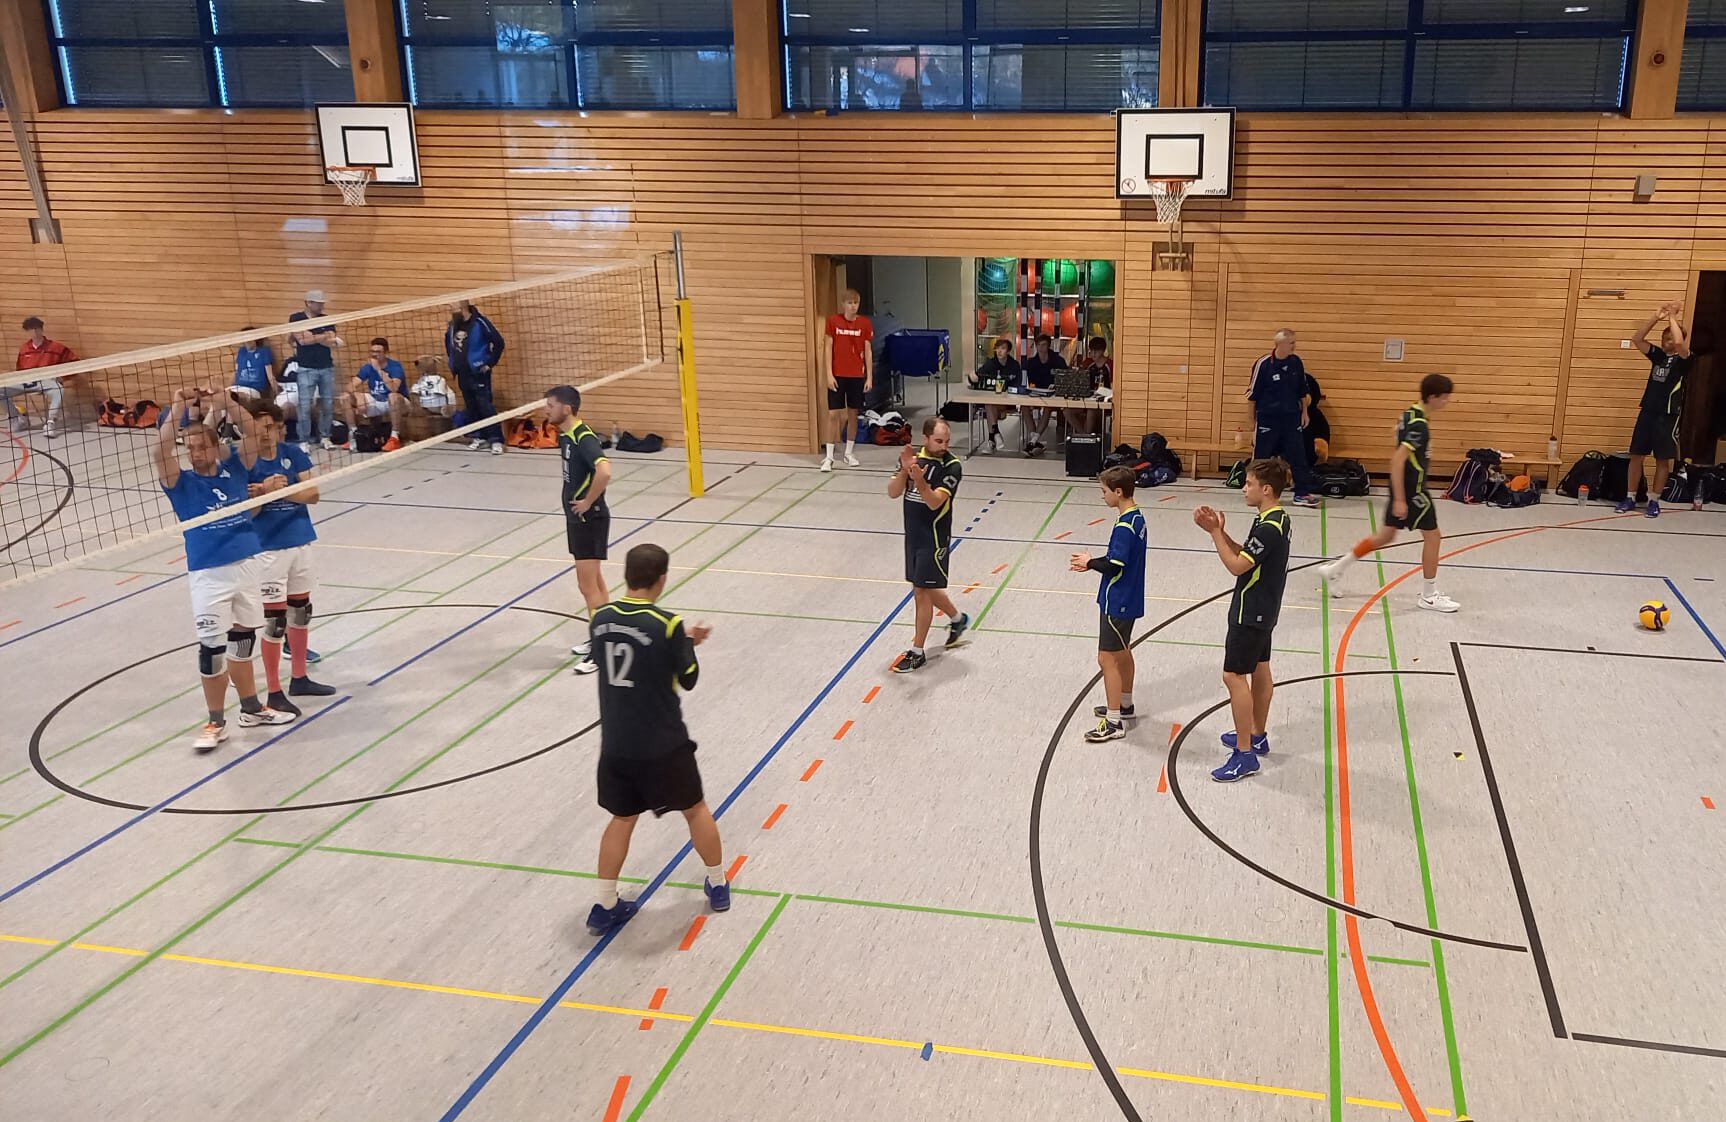 https://www.volleyball-rosenheim.de/wp-content/uploads/2022/02/Herren_2_Volleyball_Rosenheim_2201-e1643839123773.jpeg